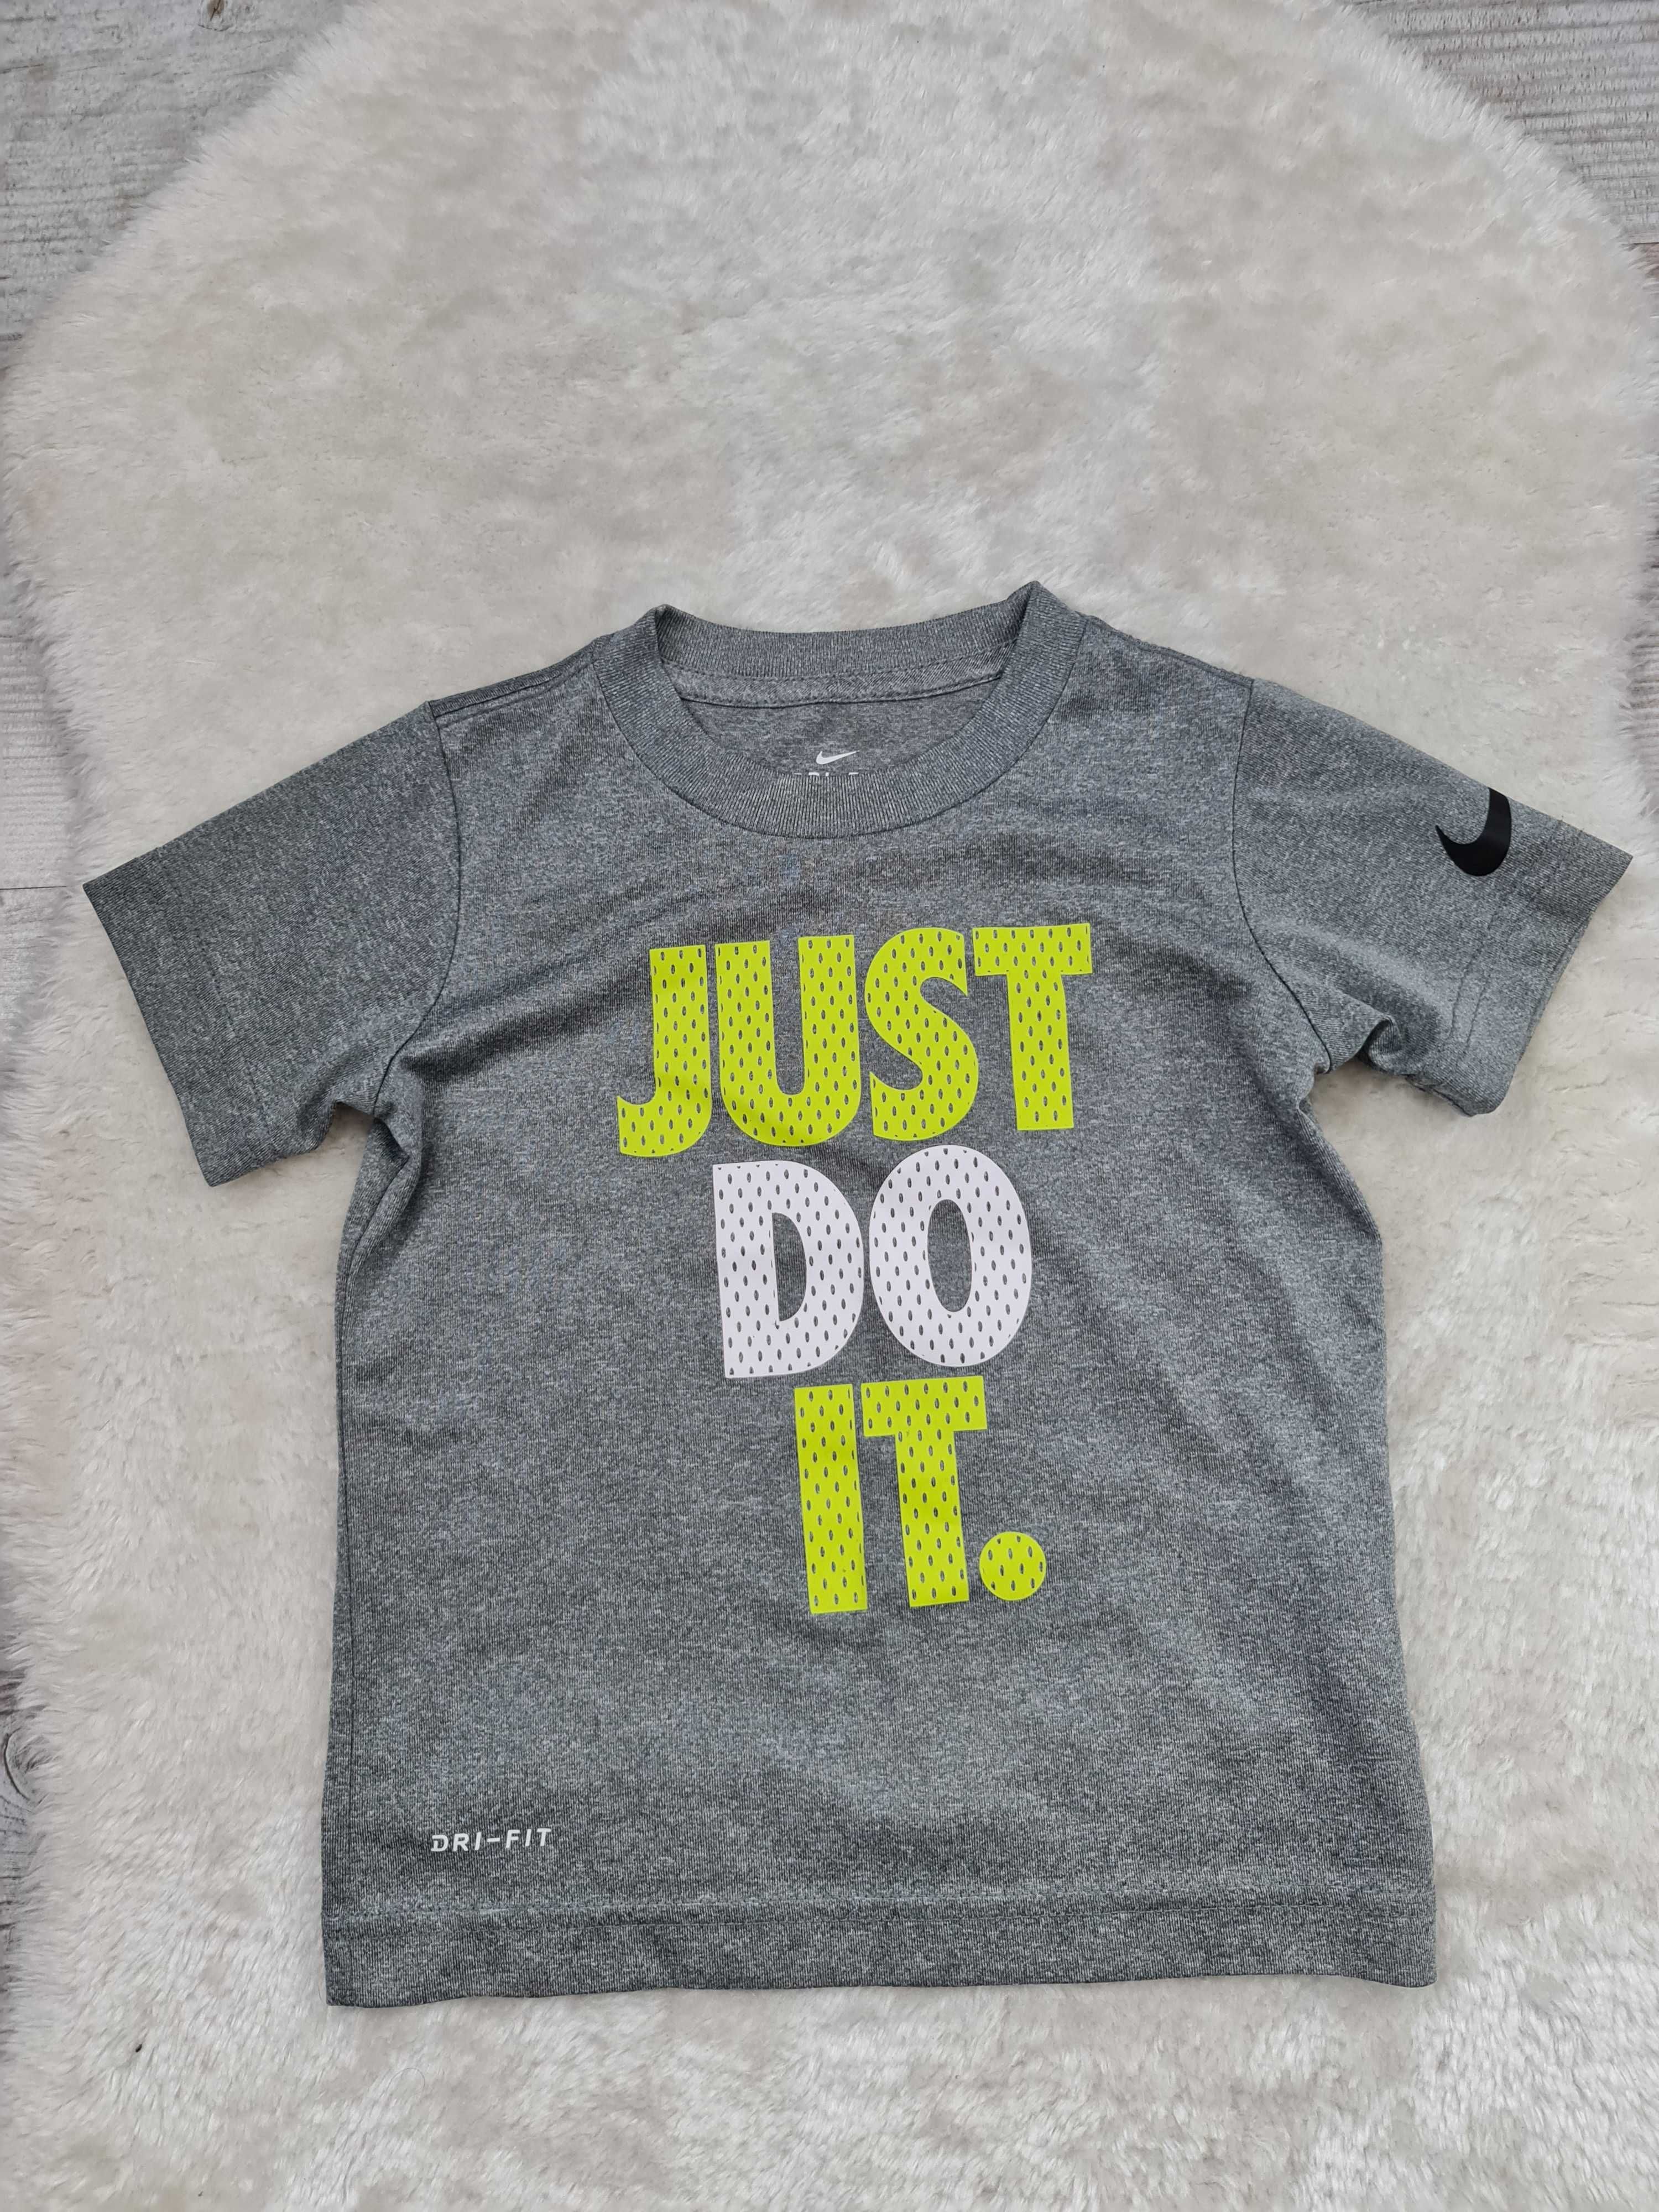 Koszulka Nike Swoosh Just do it Rozmiar 92 - 98 na Wiek 2 a 3 Lat